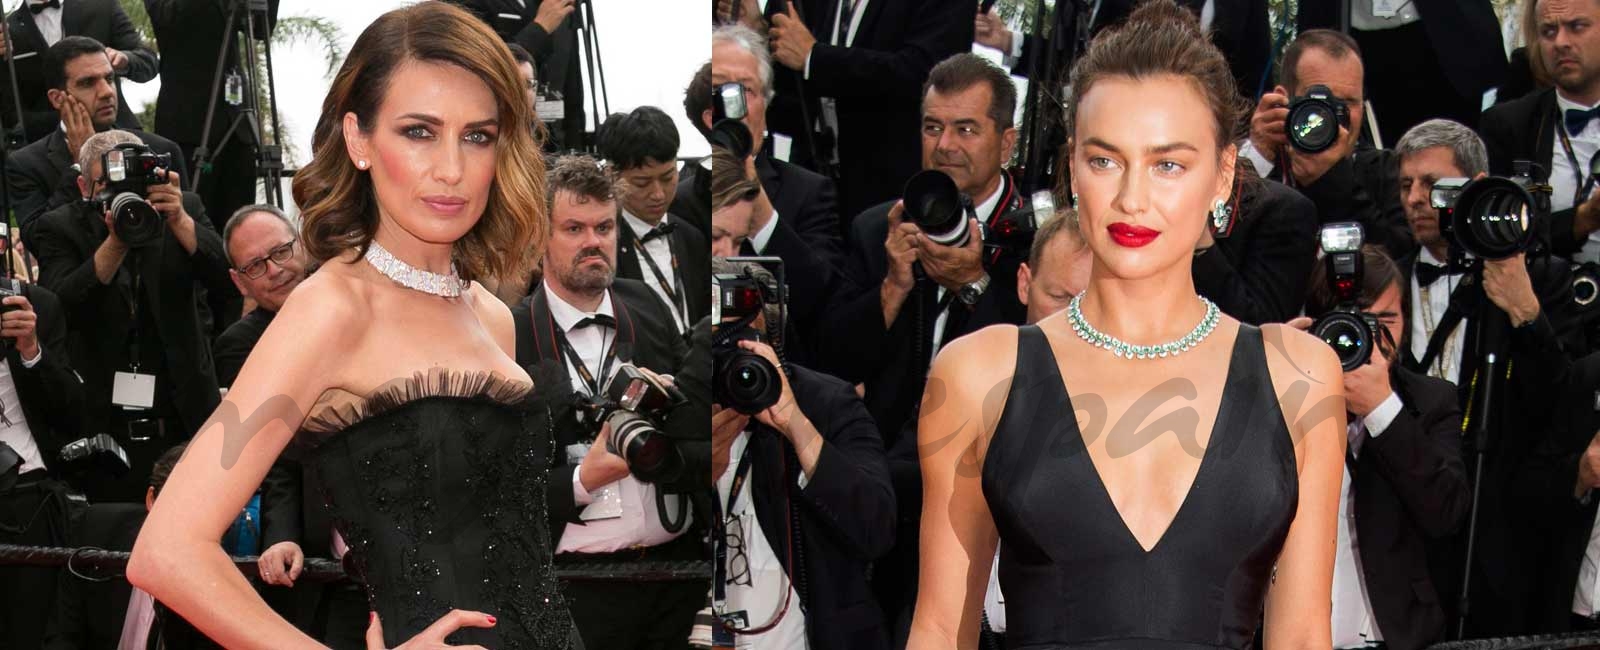 Irina Shayk y Nieves Álvarez, duelo de bellezas en Cannes